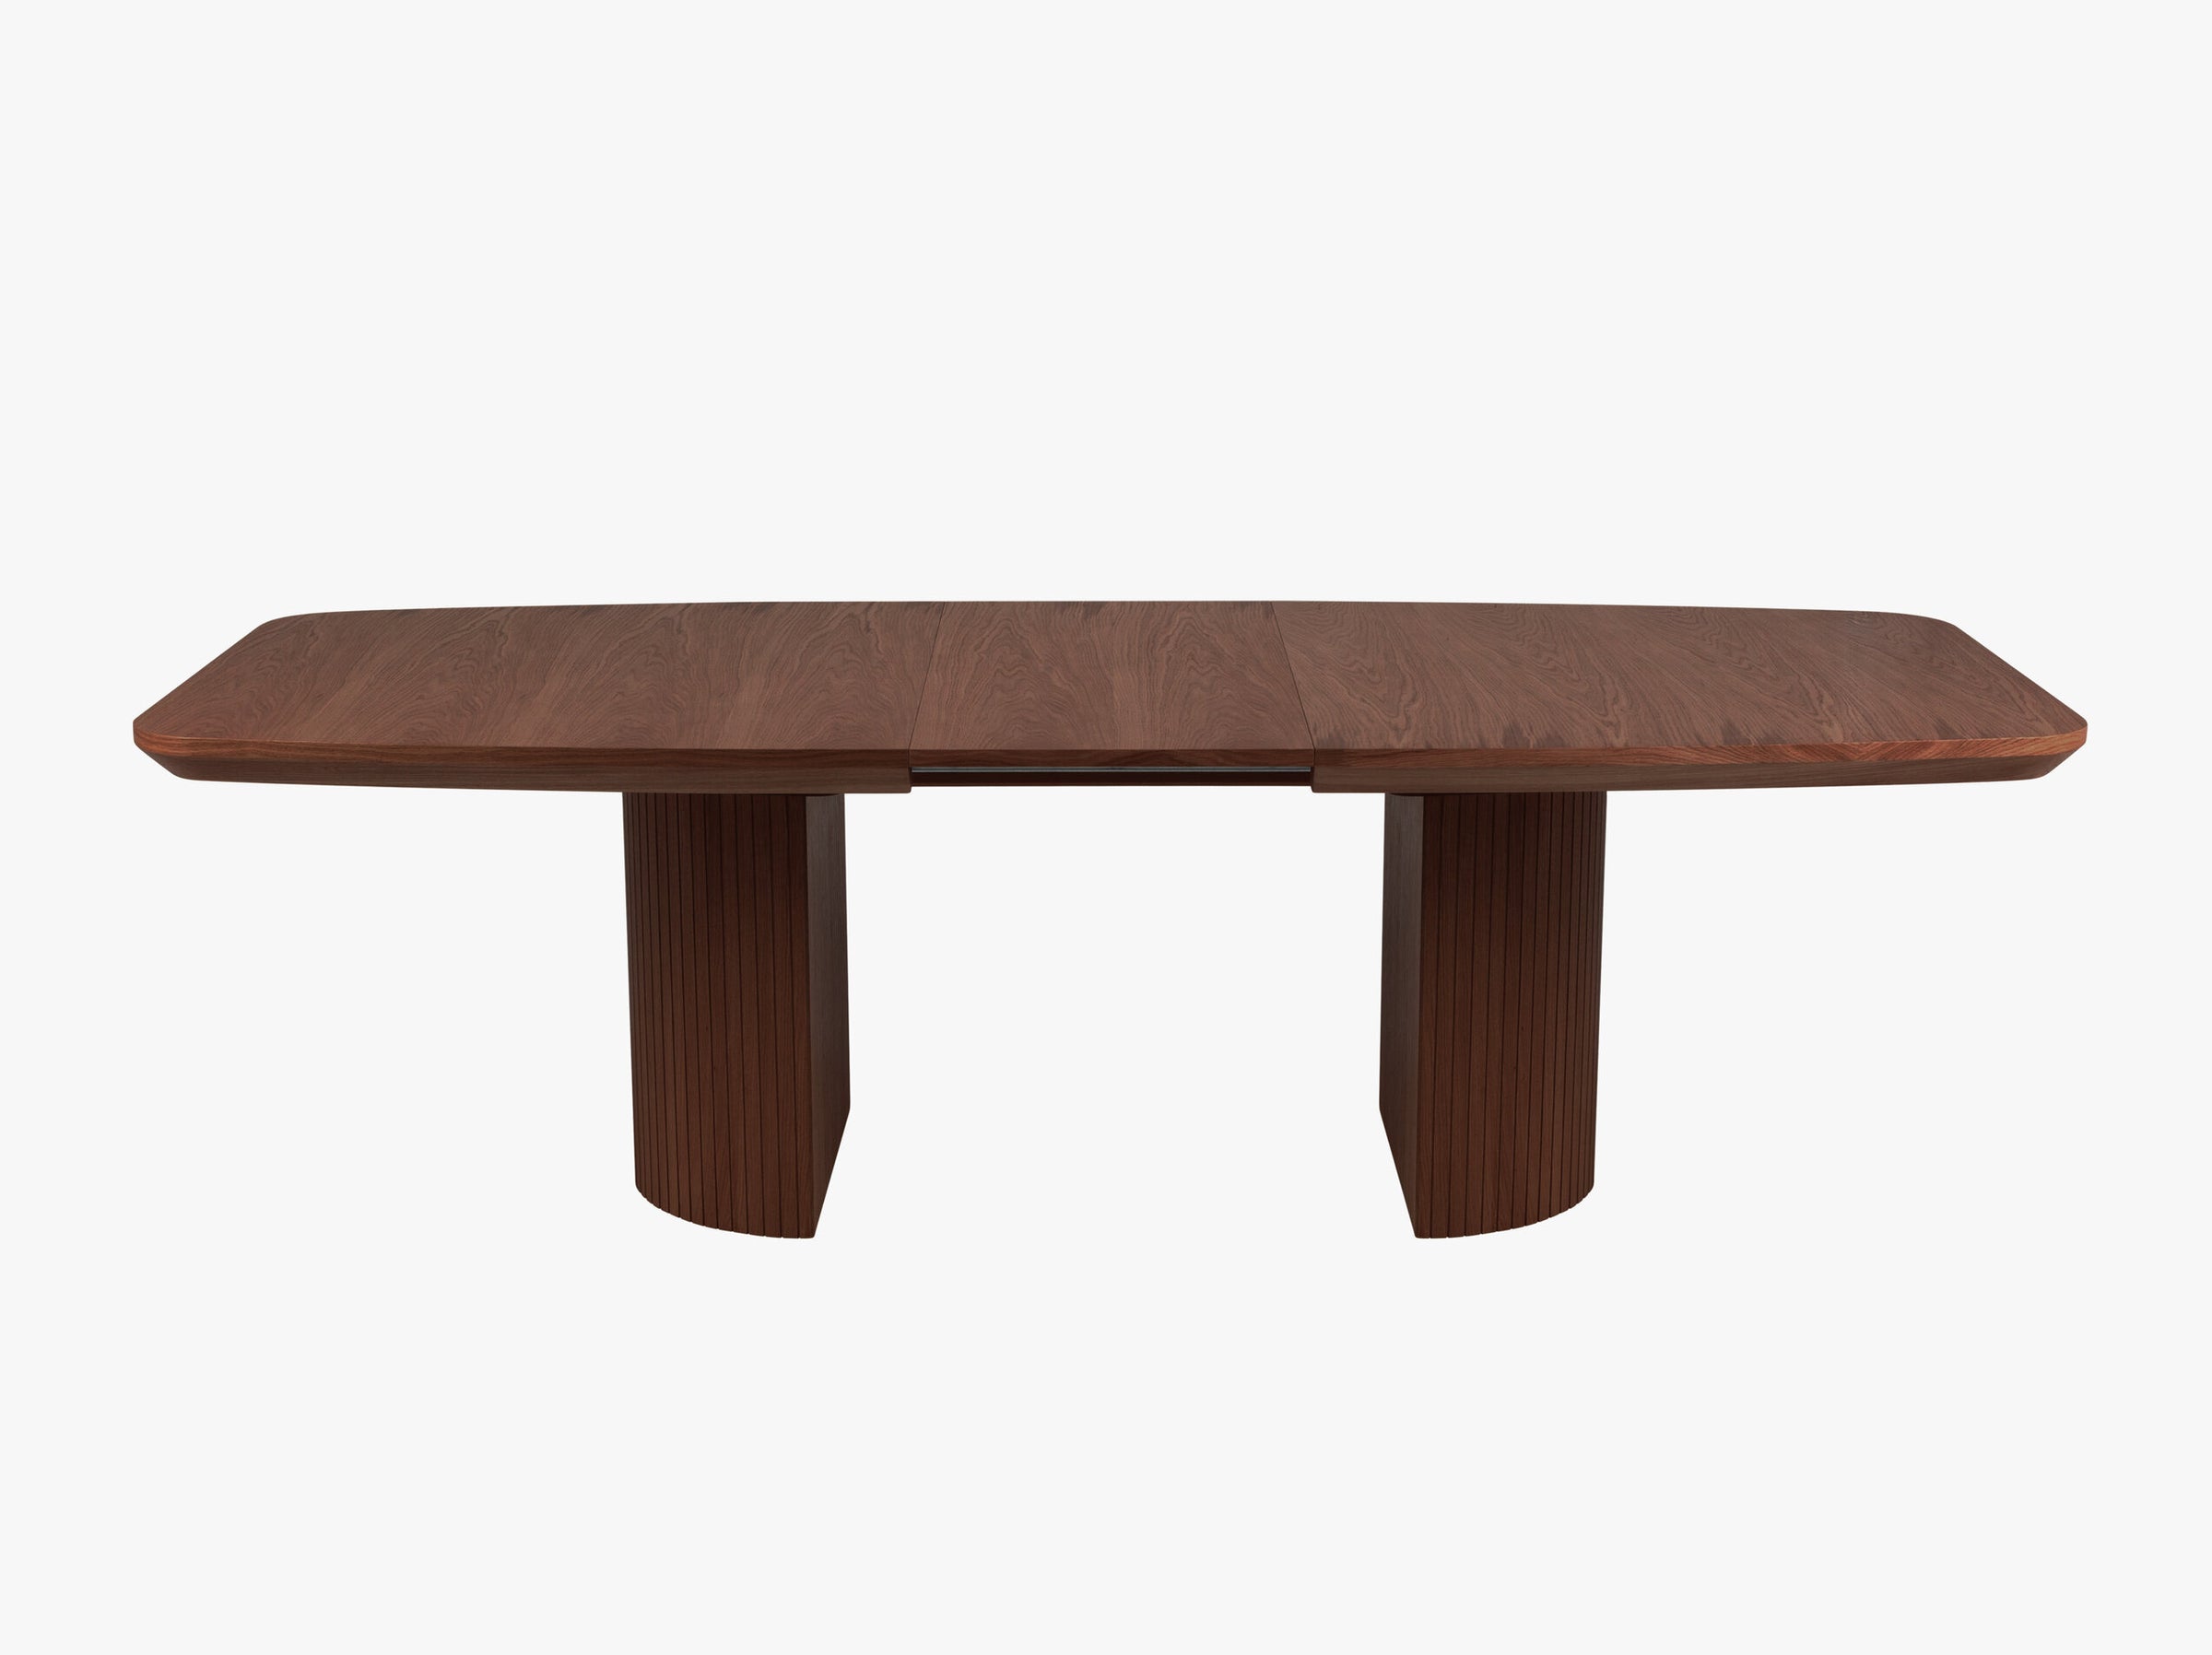 Mana tavoli e sedie legno impiallacciatura in rovere scuro e rovere marrone scuro